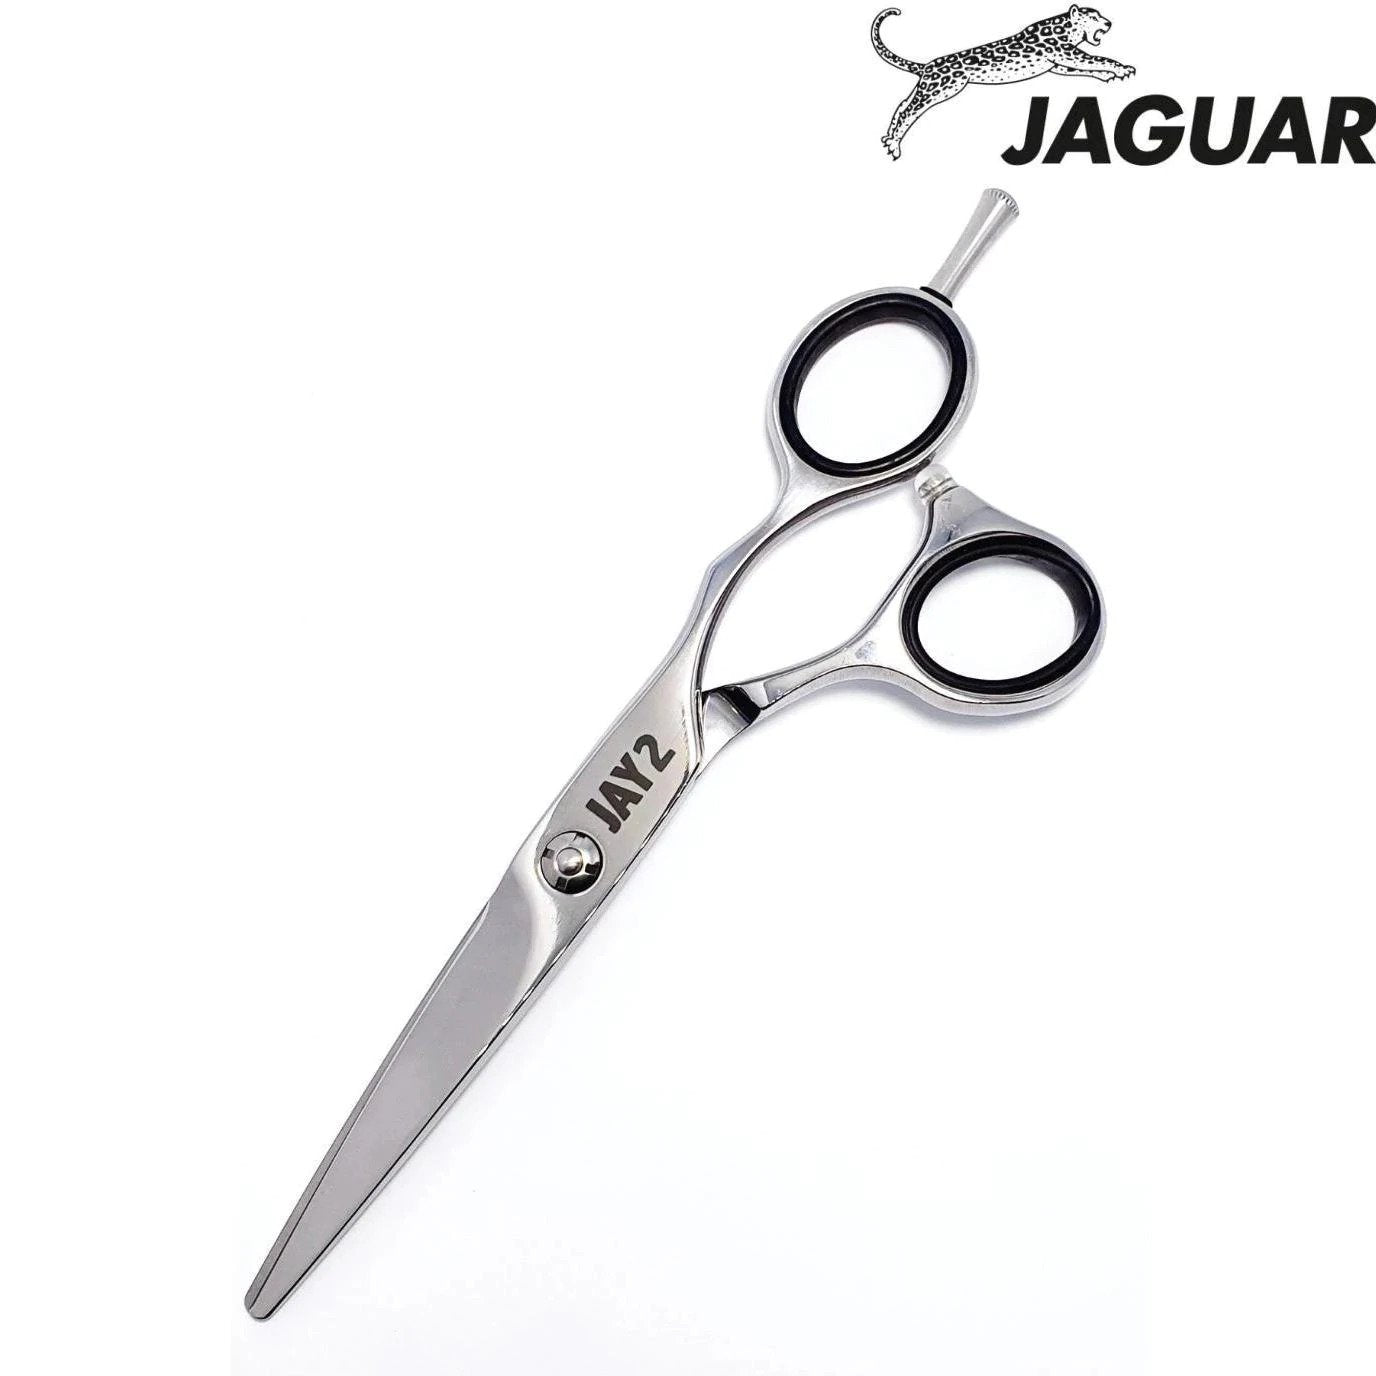 Jaguar jay2 pour débutant en coiffure